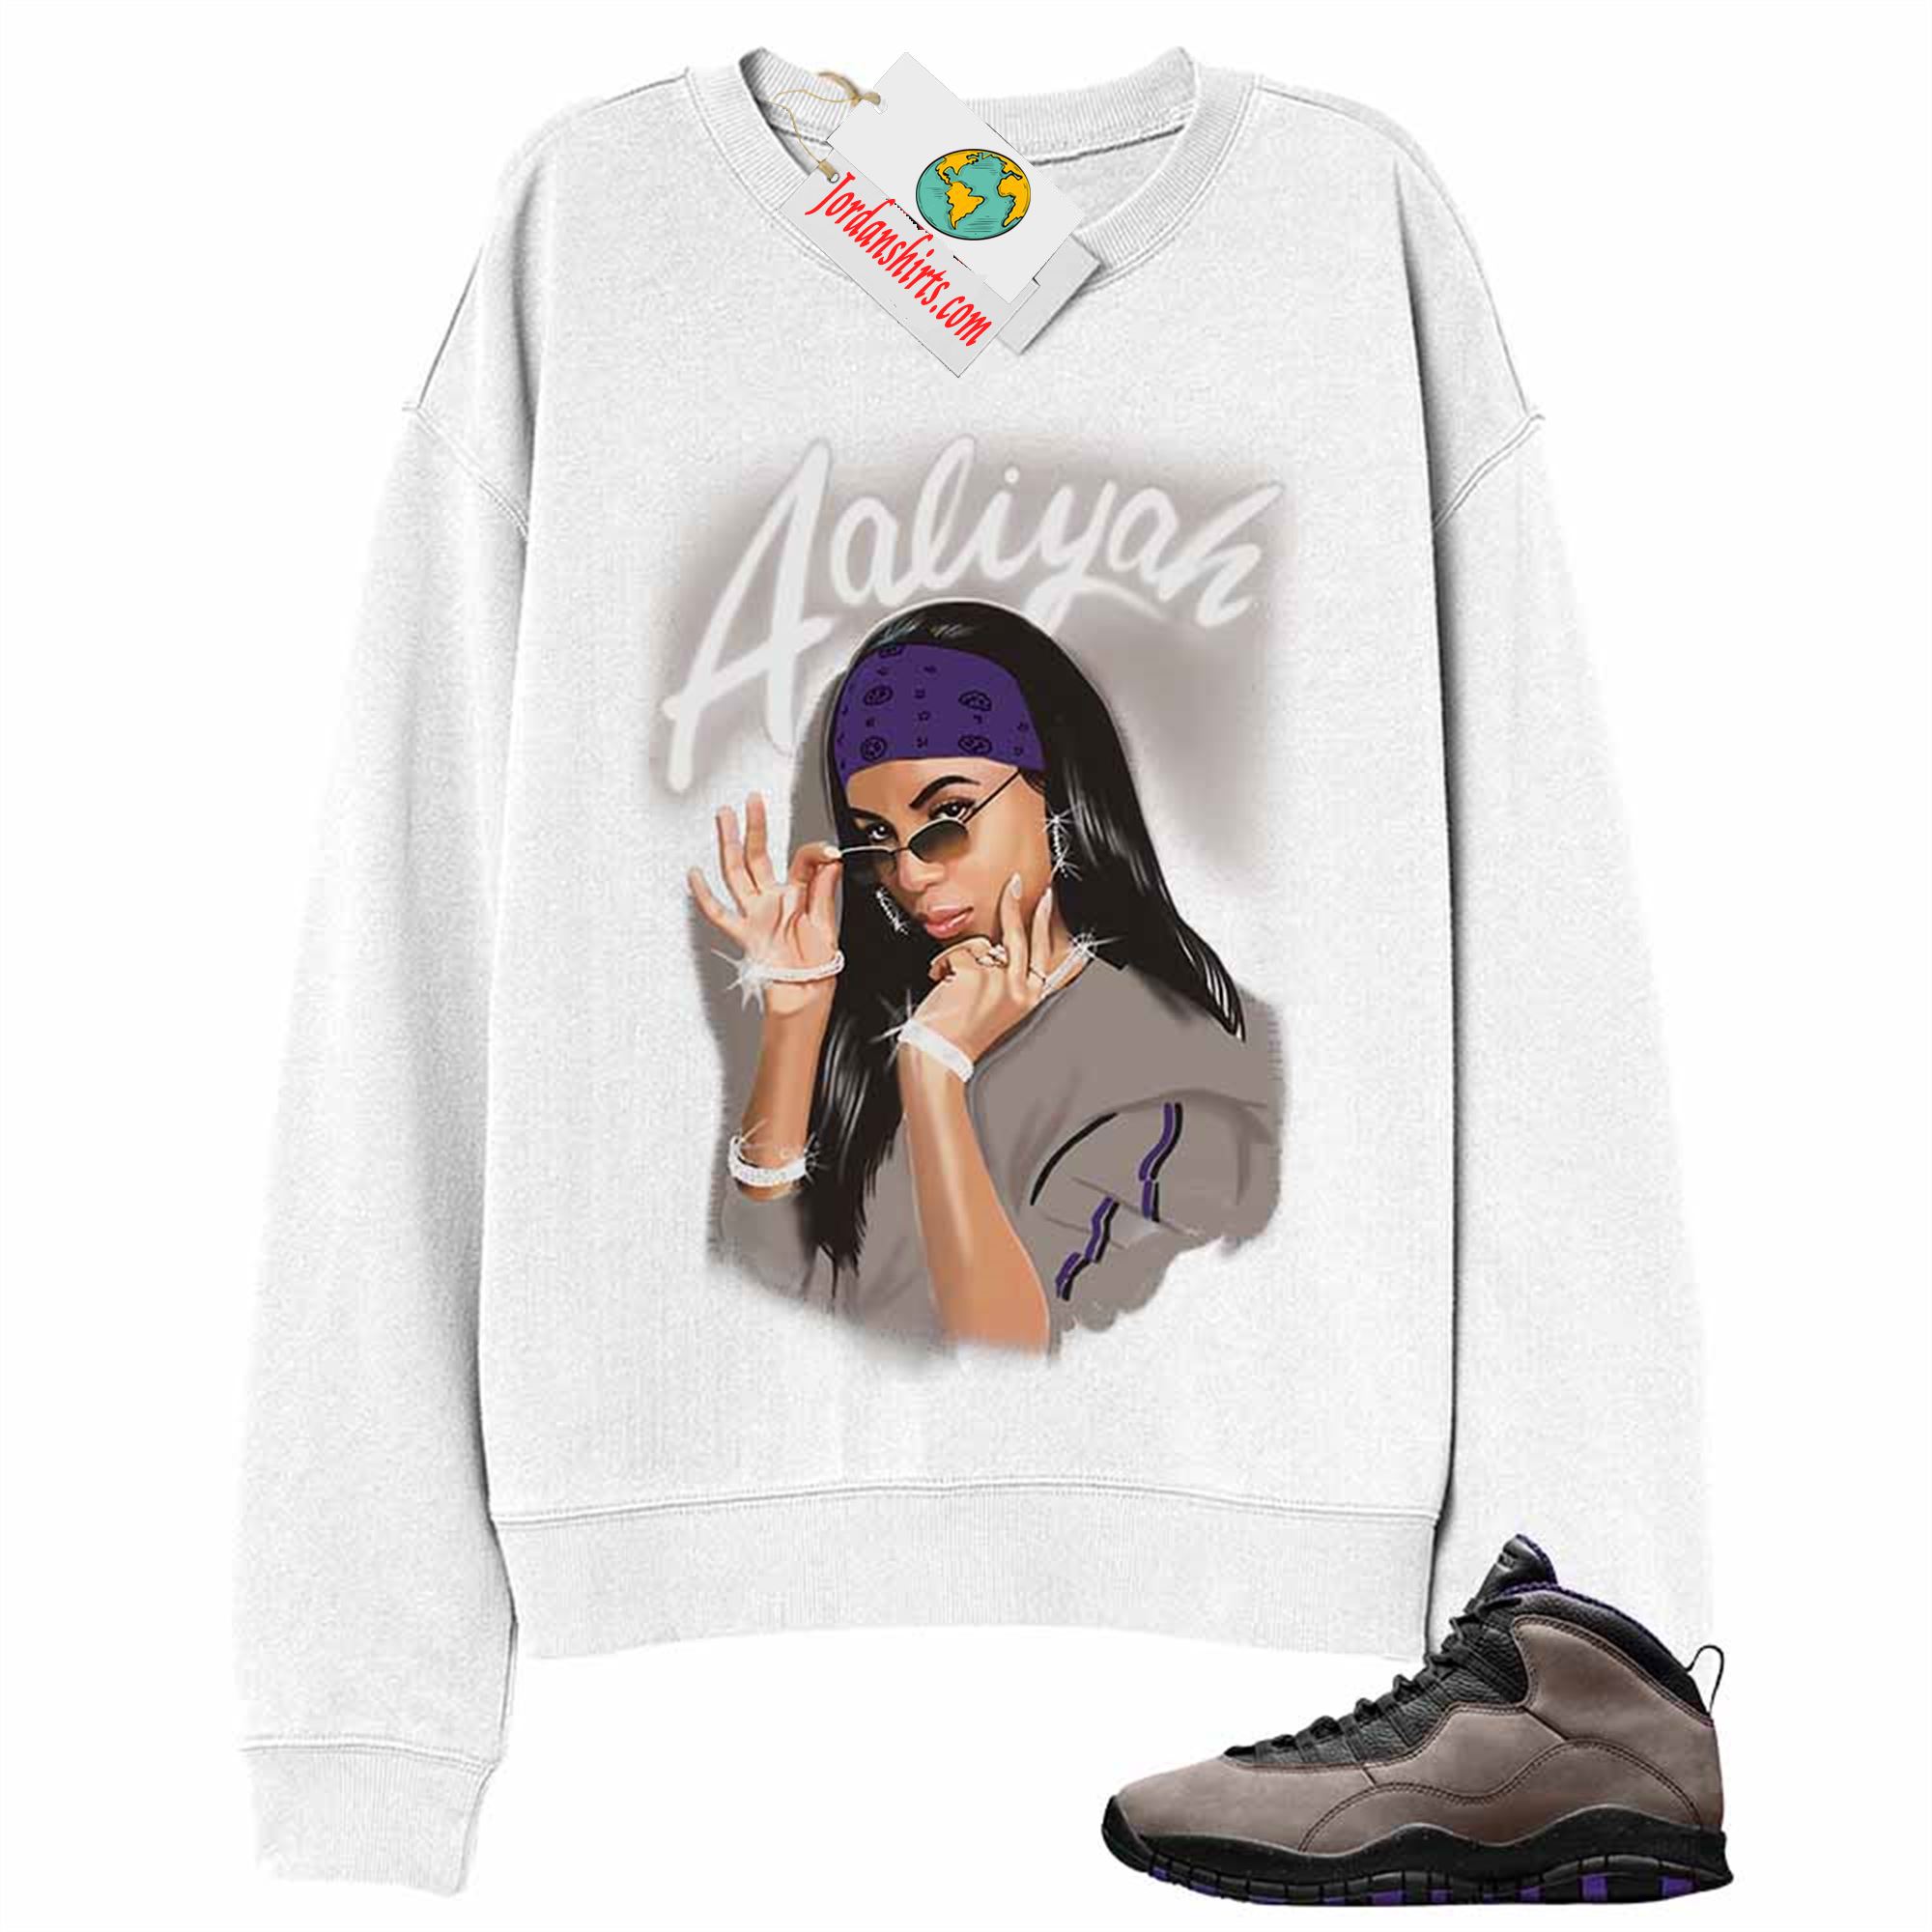 Jordan 10 Sweatshirt, Aaliyah Airbrush White Sweatshirt Air Jordan 10 Dark Mocha 10s Size Up To 5xl